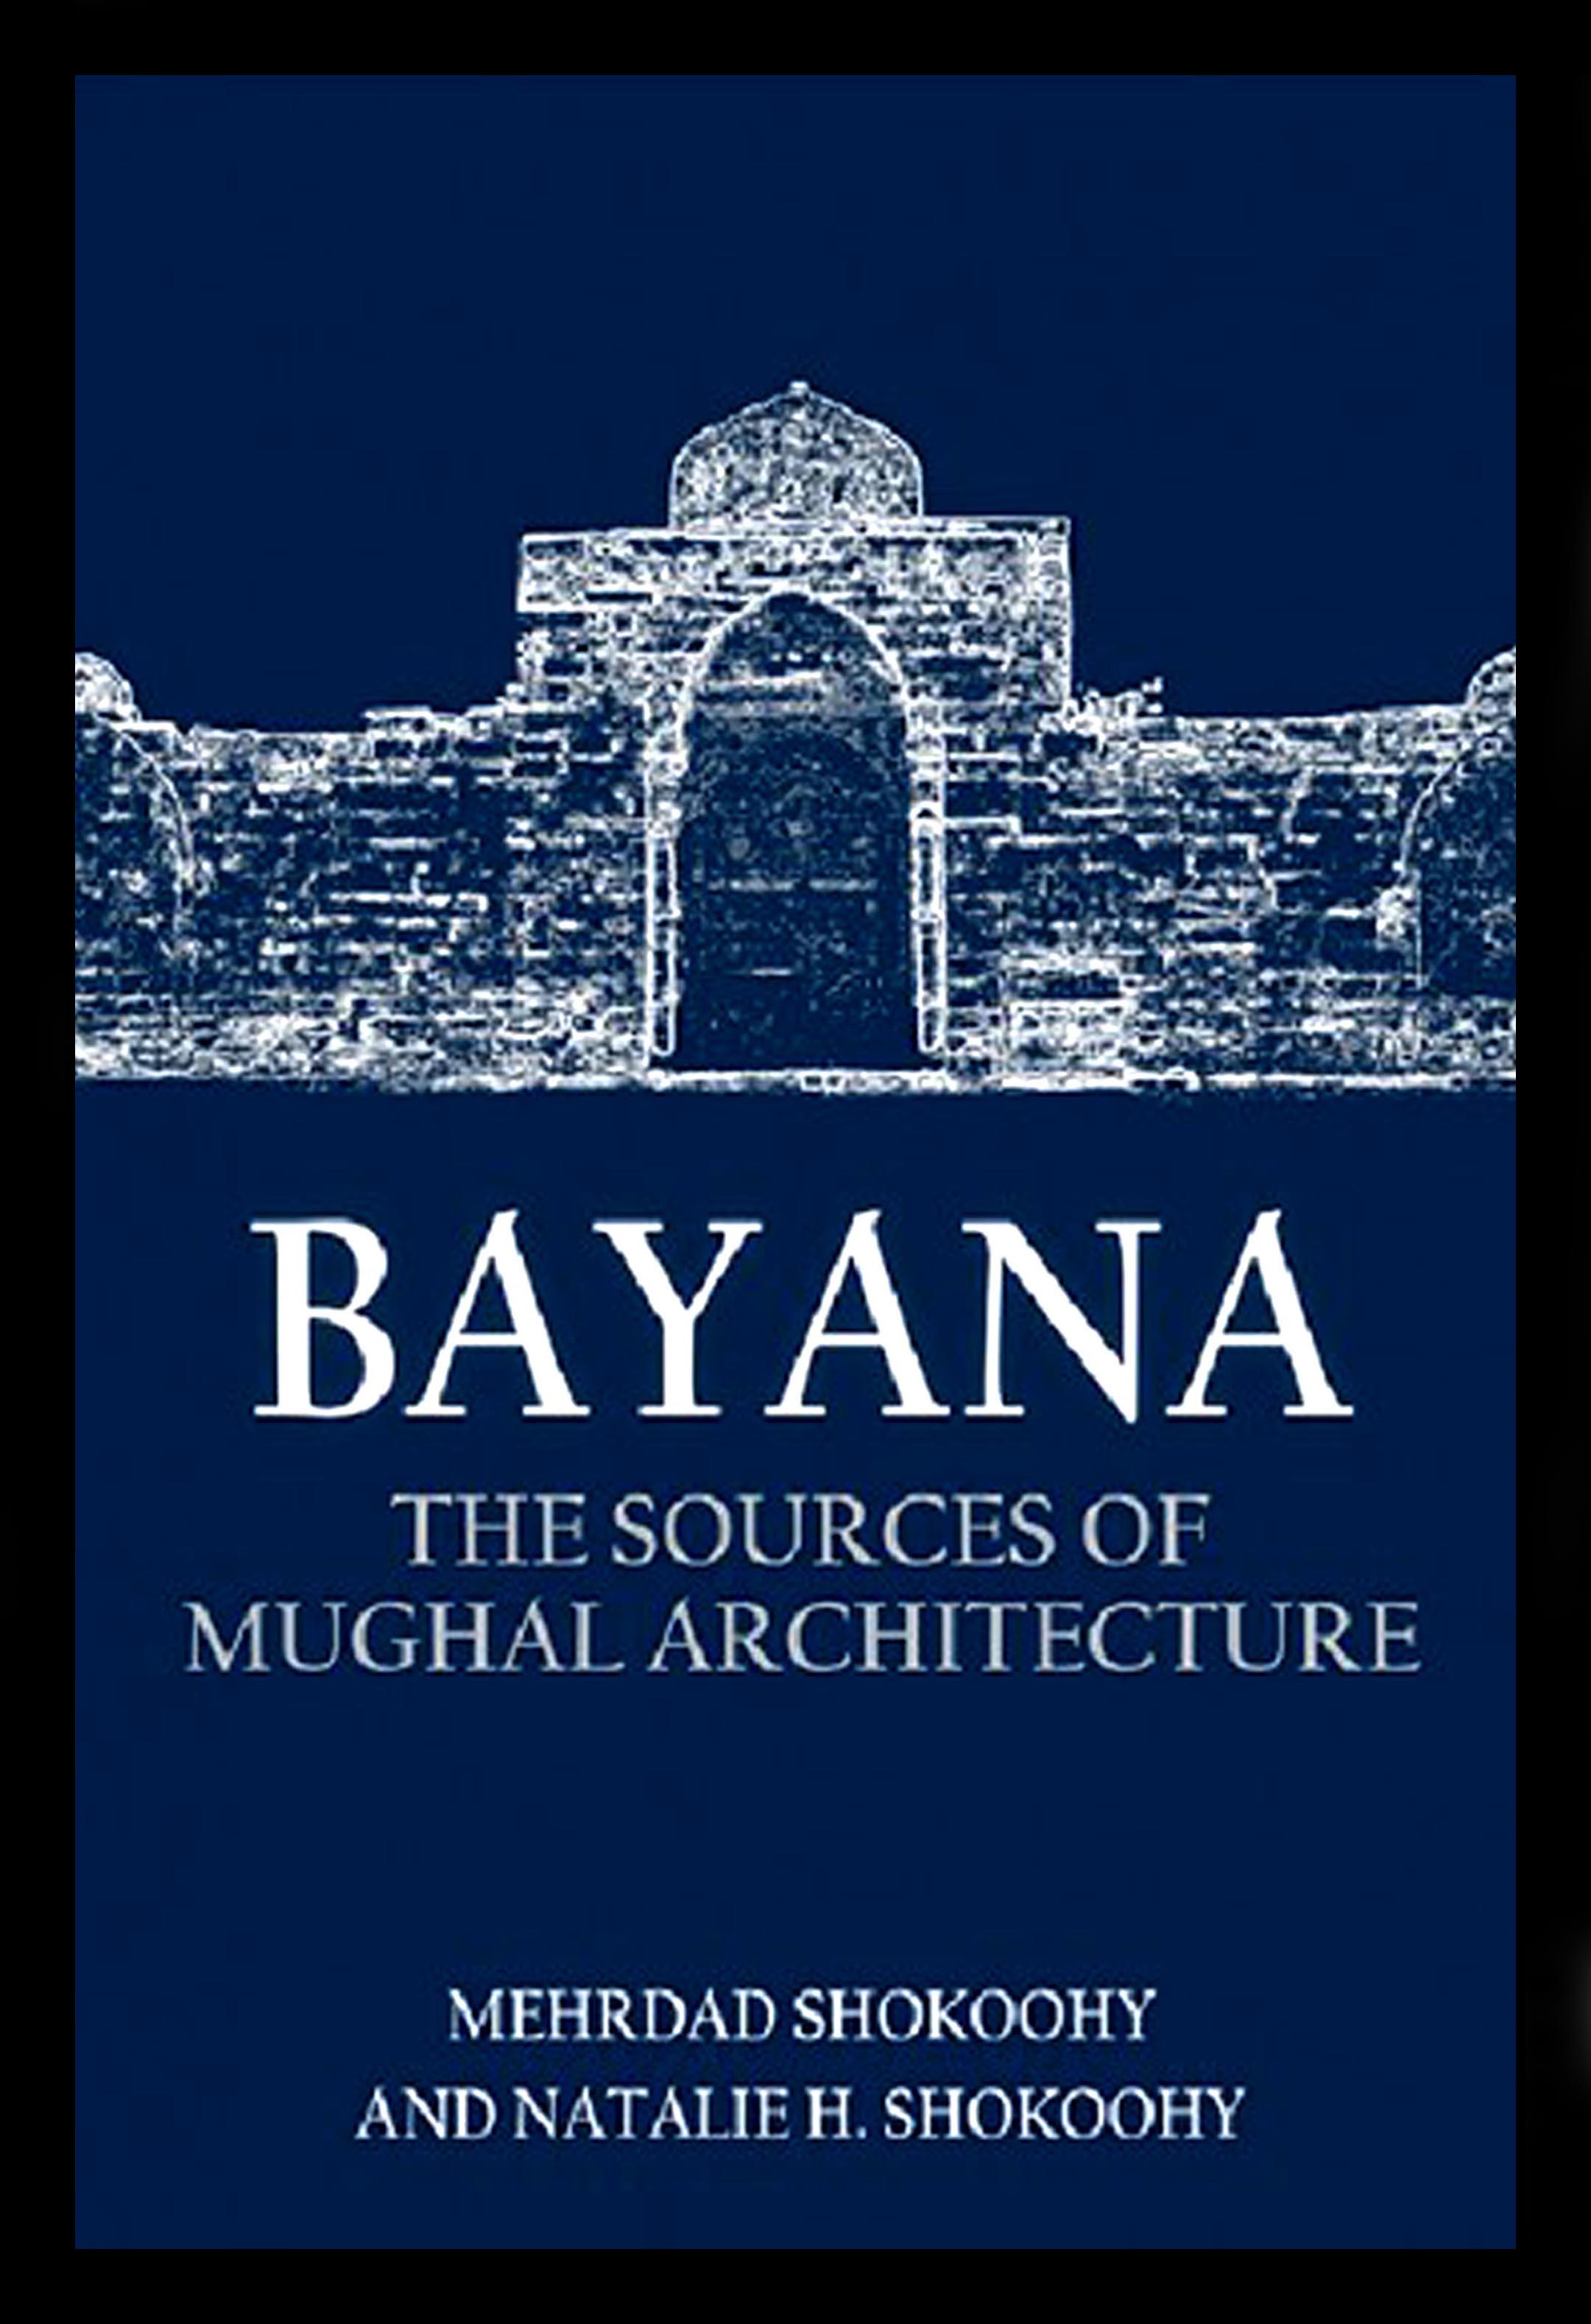 Bayana_book_cover,_small_file